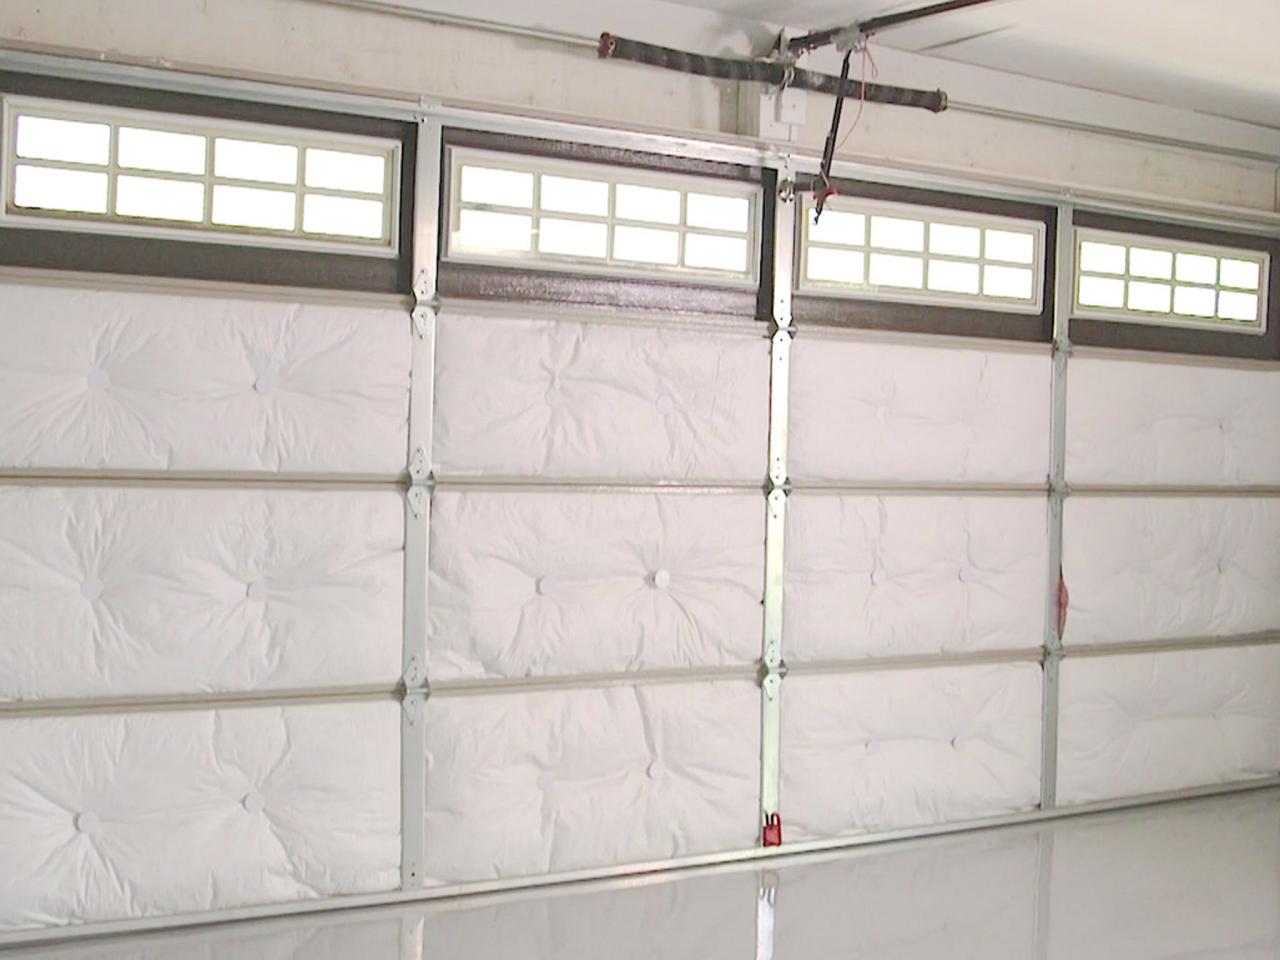 How To Insulate A Garage Door, How To Insulate A Garage Door For Summer